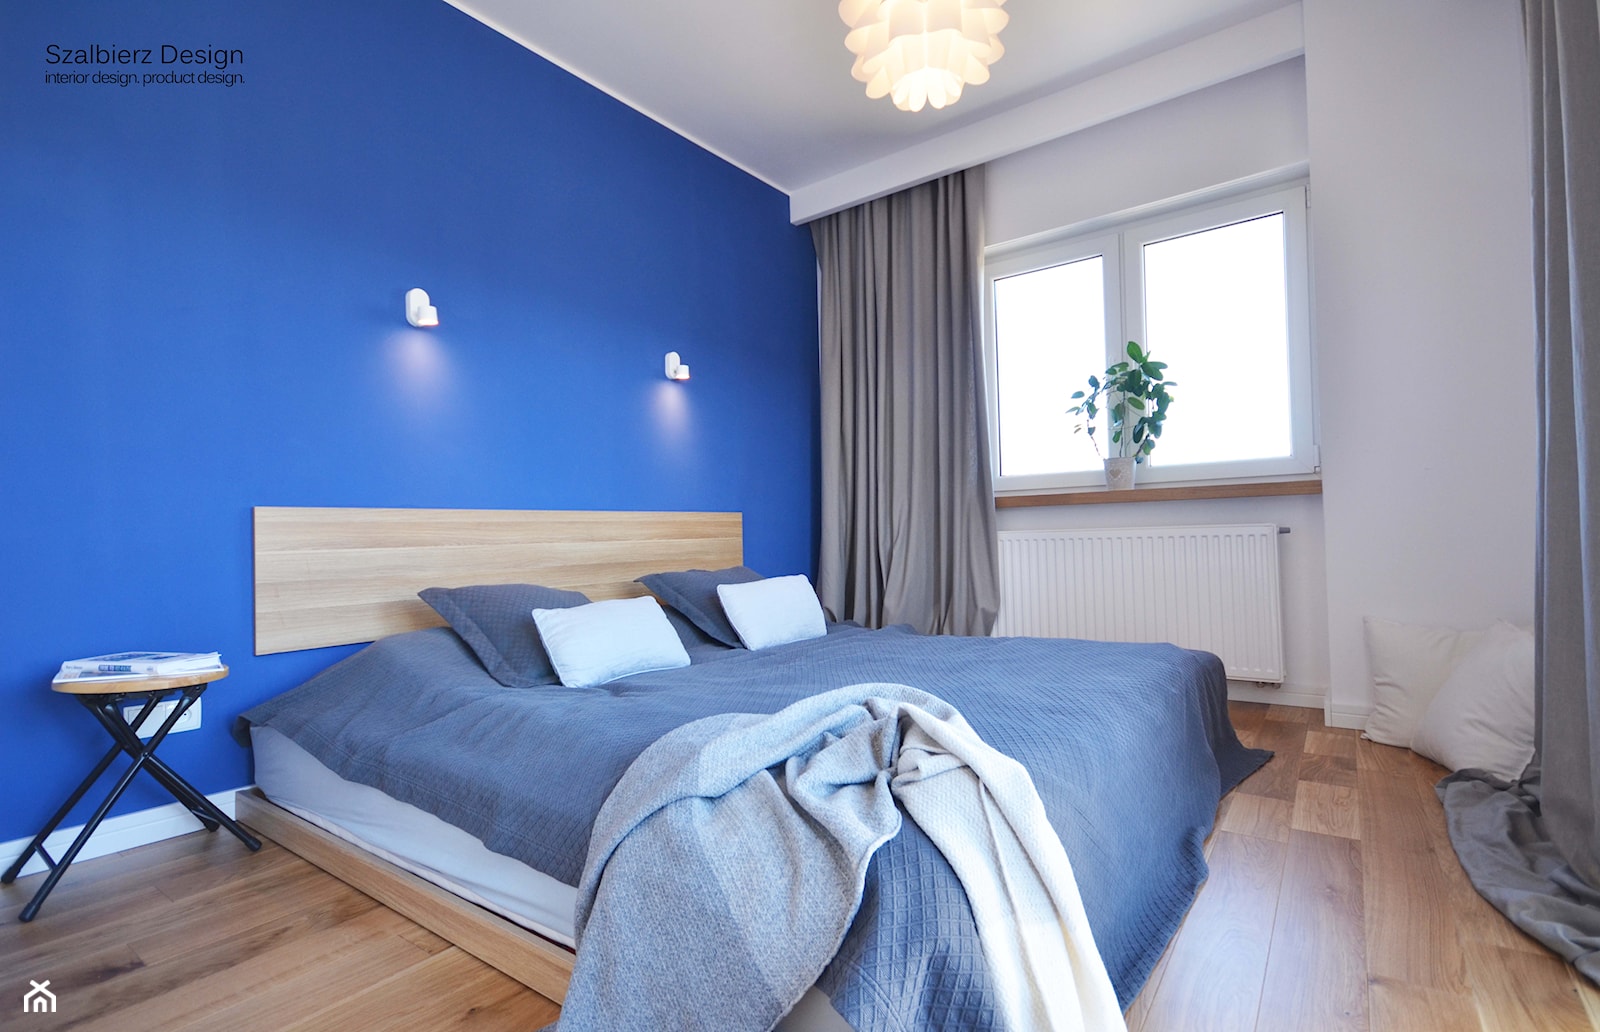 PRZYTULNY DOM JEDNORODZINNY - Mała biała niebieska sypialnia, styl skandynawski - zdjęcie od SZALBIERZ.DESIGN - Homebook